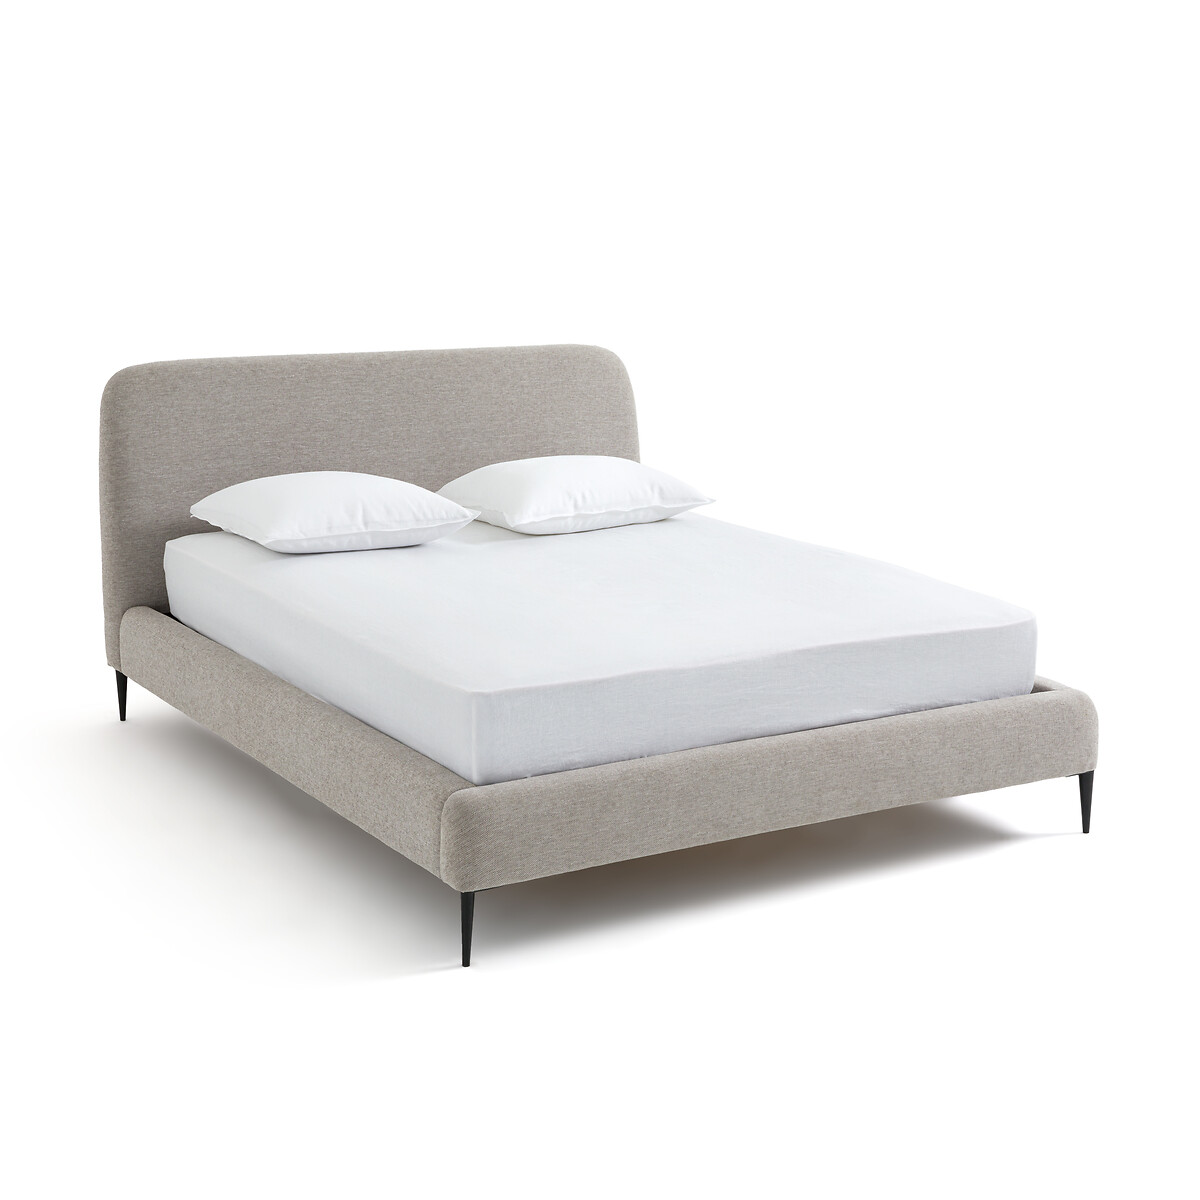 Кровать Oscar дизайн Э Галлина 160 x 200 см серый